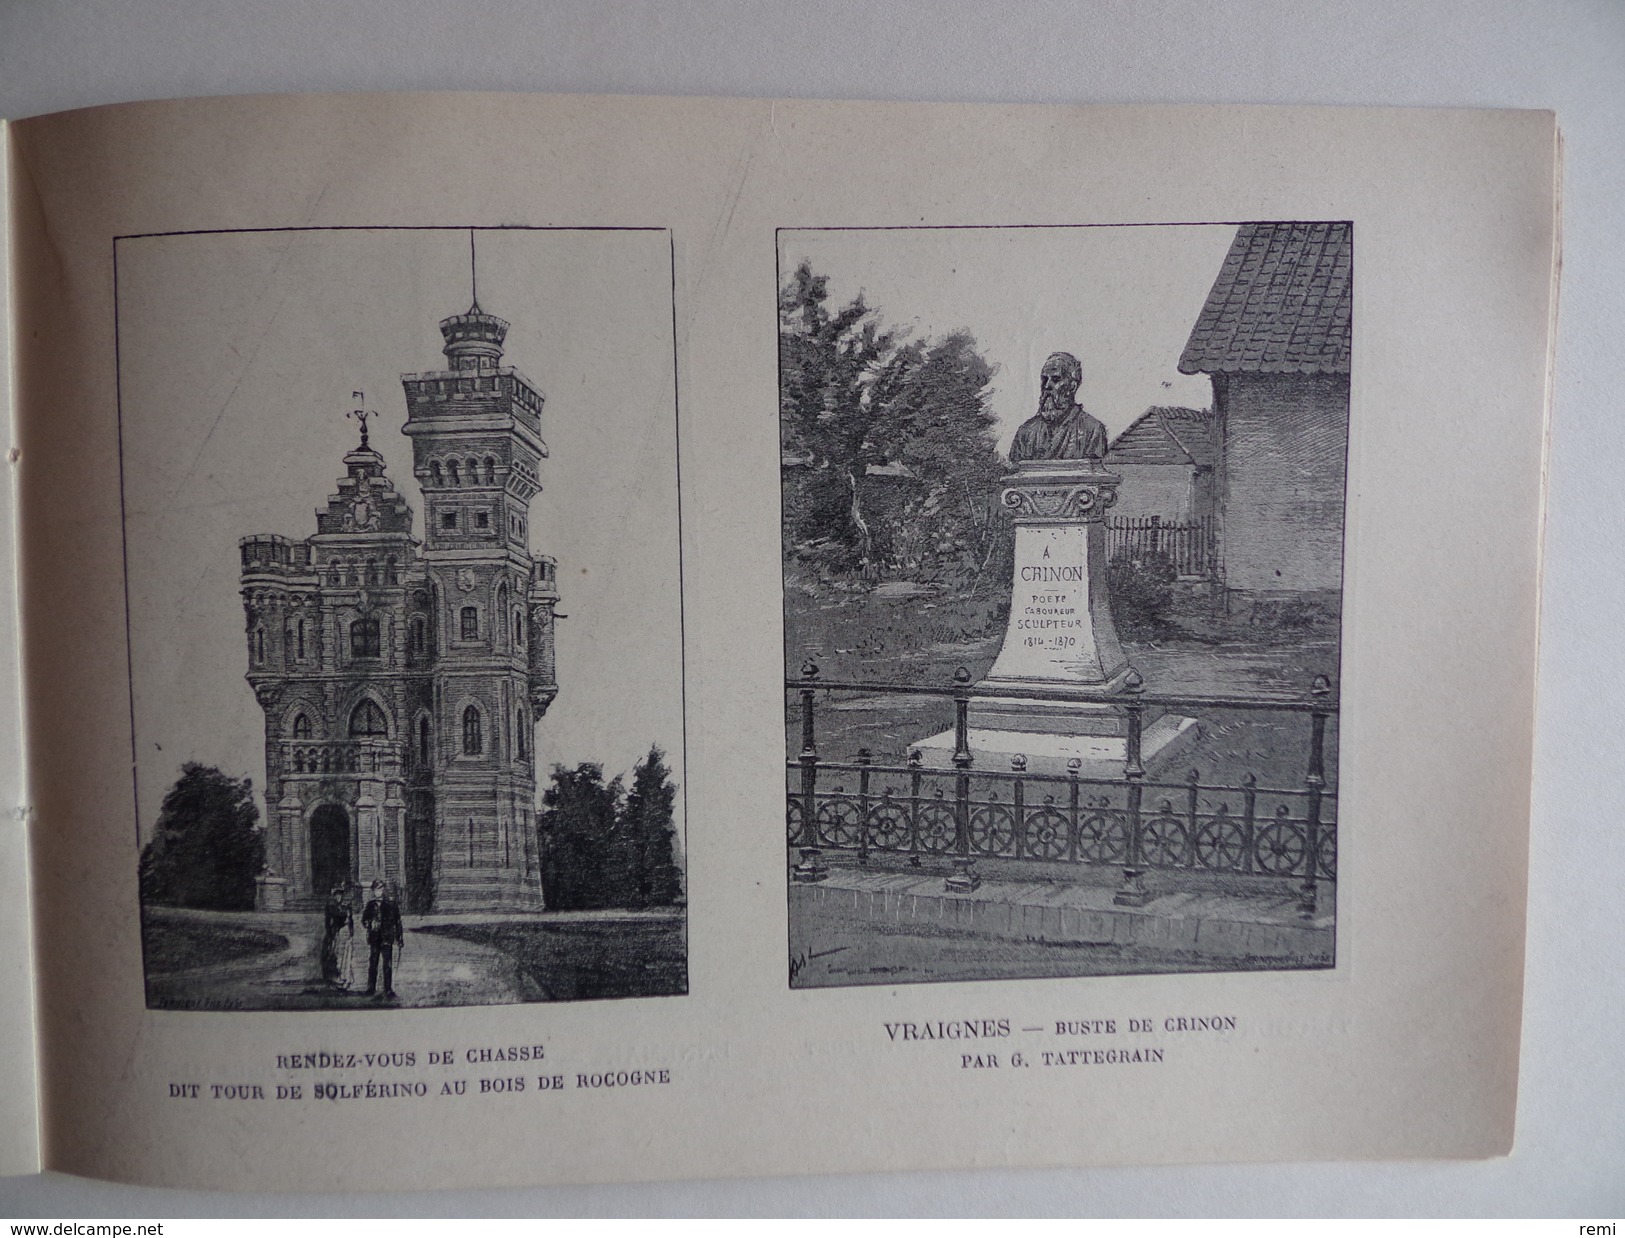 FRANCE-ALBUM Arrondissement de PERONNE n°56 déc 1899 Publication mensuelle Paniconographie HAM ETERPIGNY NESLE CHAULNES